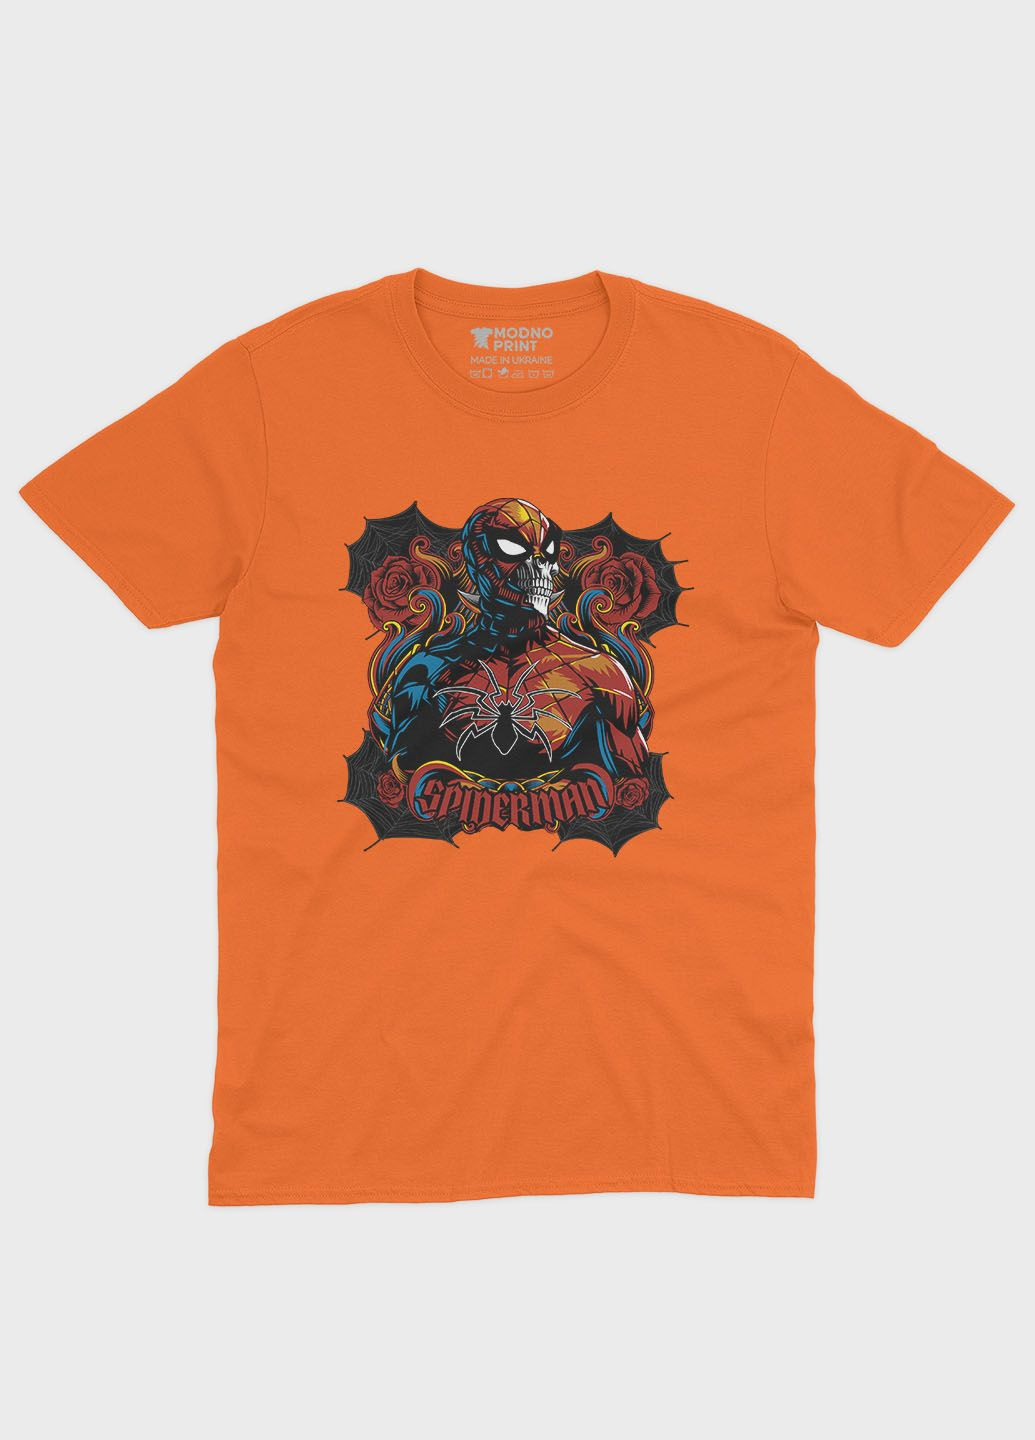 Оранжевая демисезонная футболка для девочки с принтом супергероя - человек-паук (ts001-1-ora-006-014-040-g) Modno